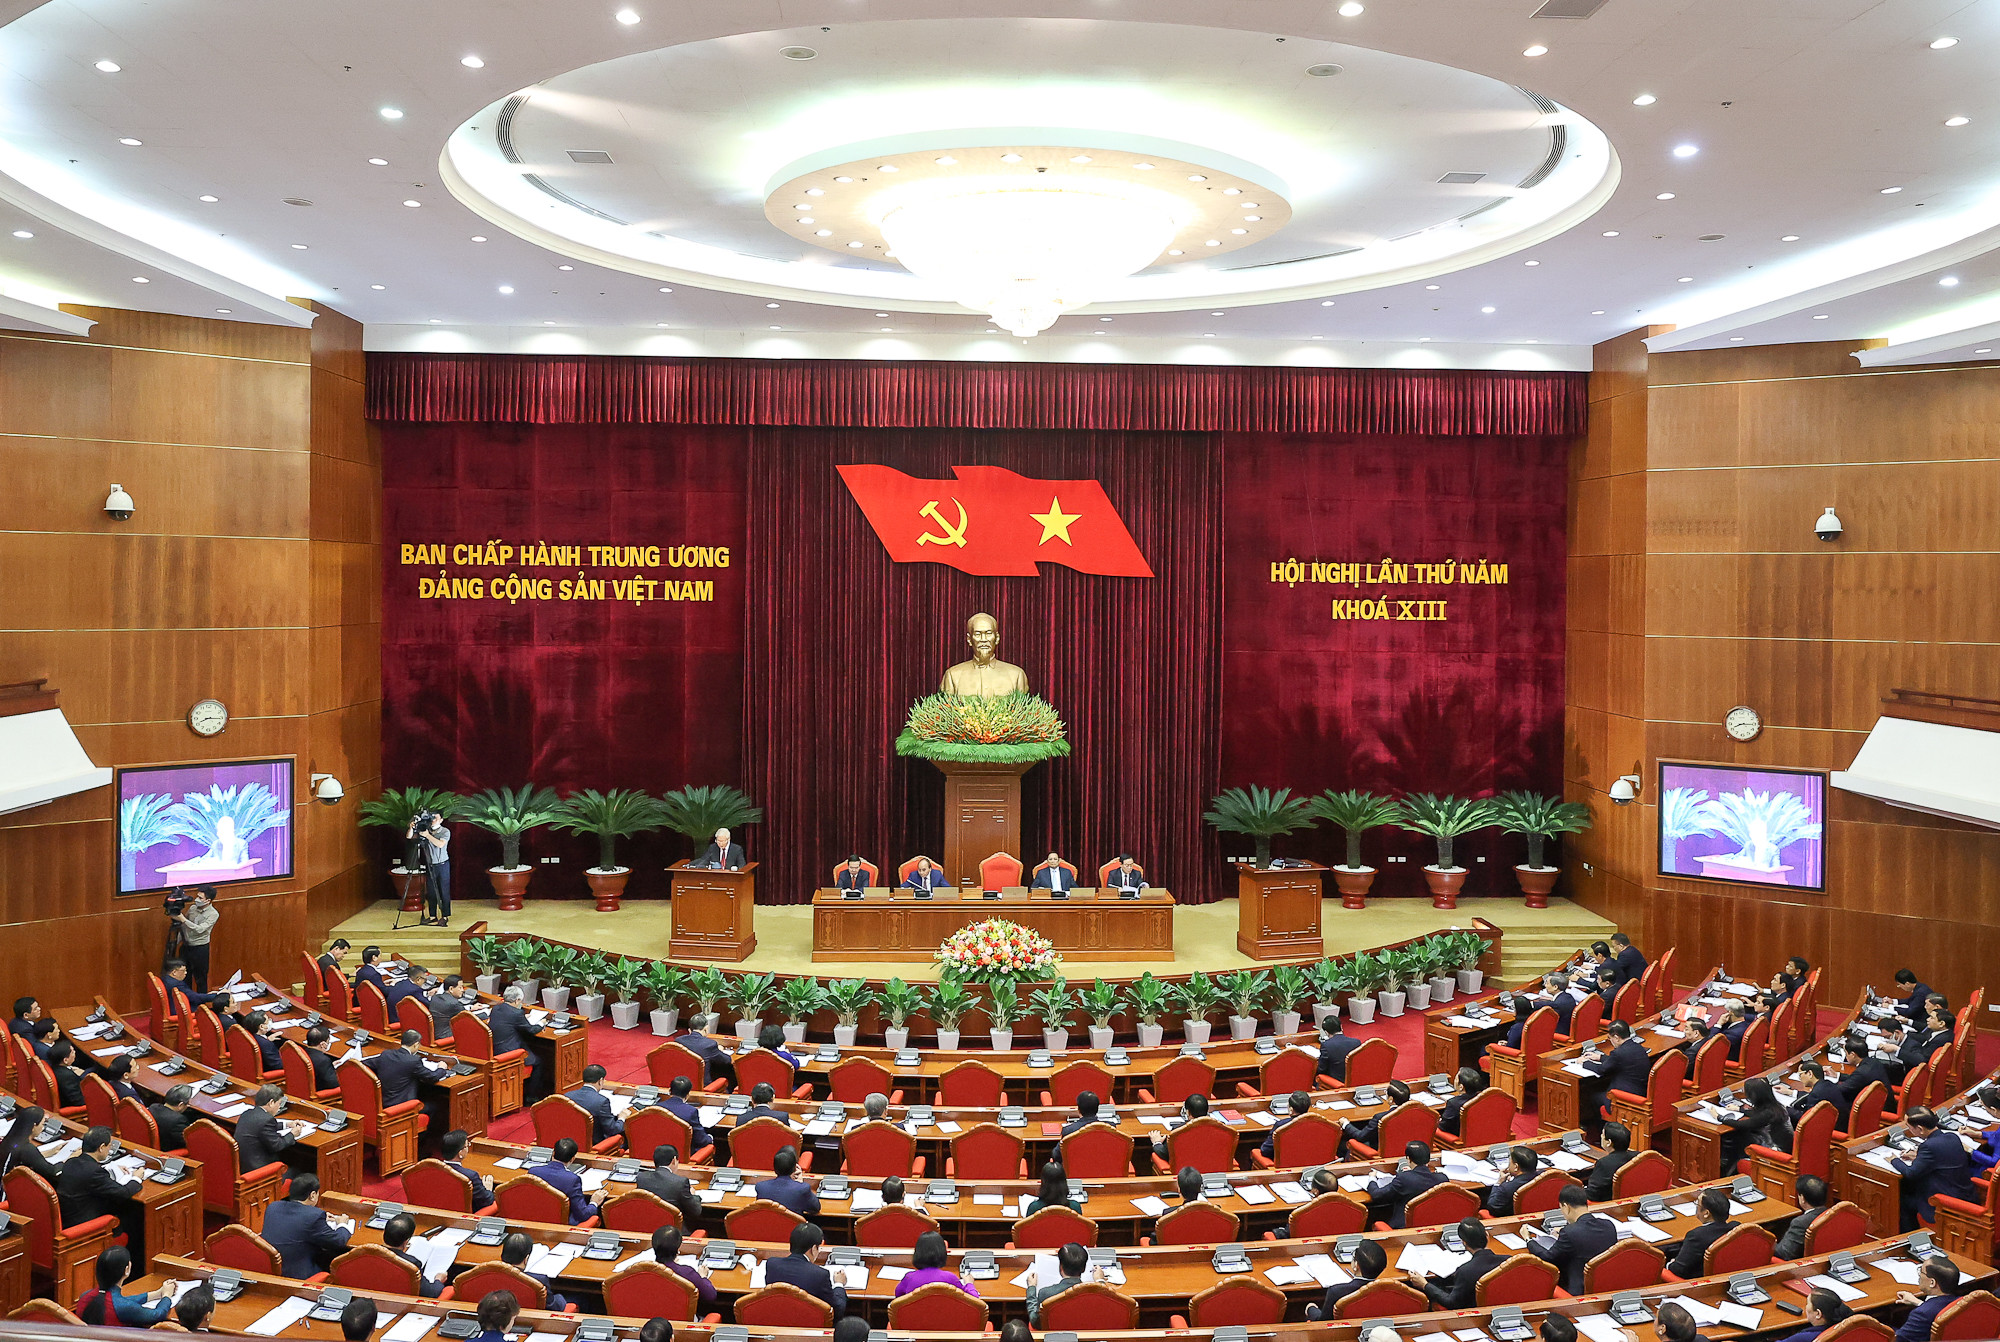 Quang cảnh Hội nghị Trung ương 5 khóa XIII của Ban Chấp hành Trung ương Đảng. Ảnh: Internet